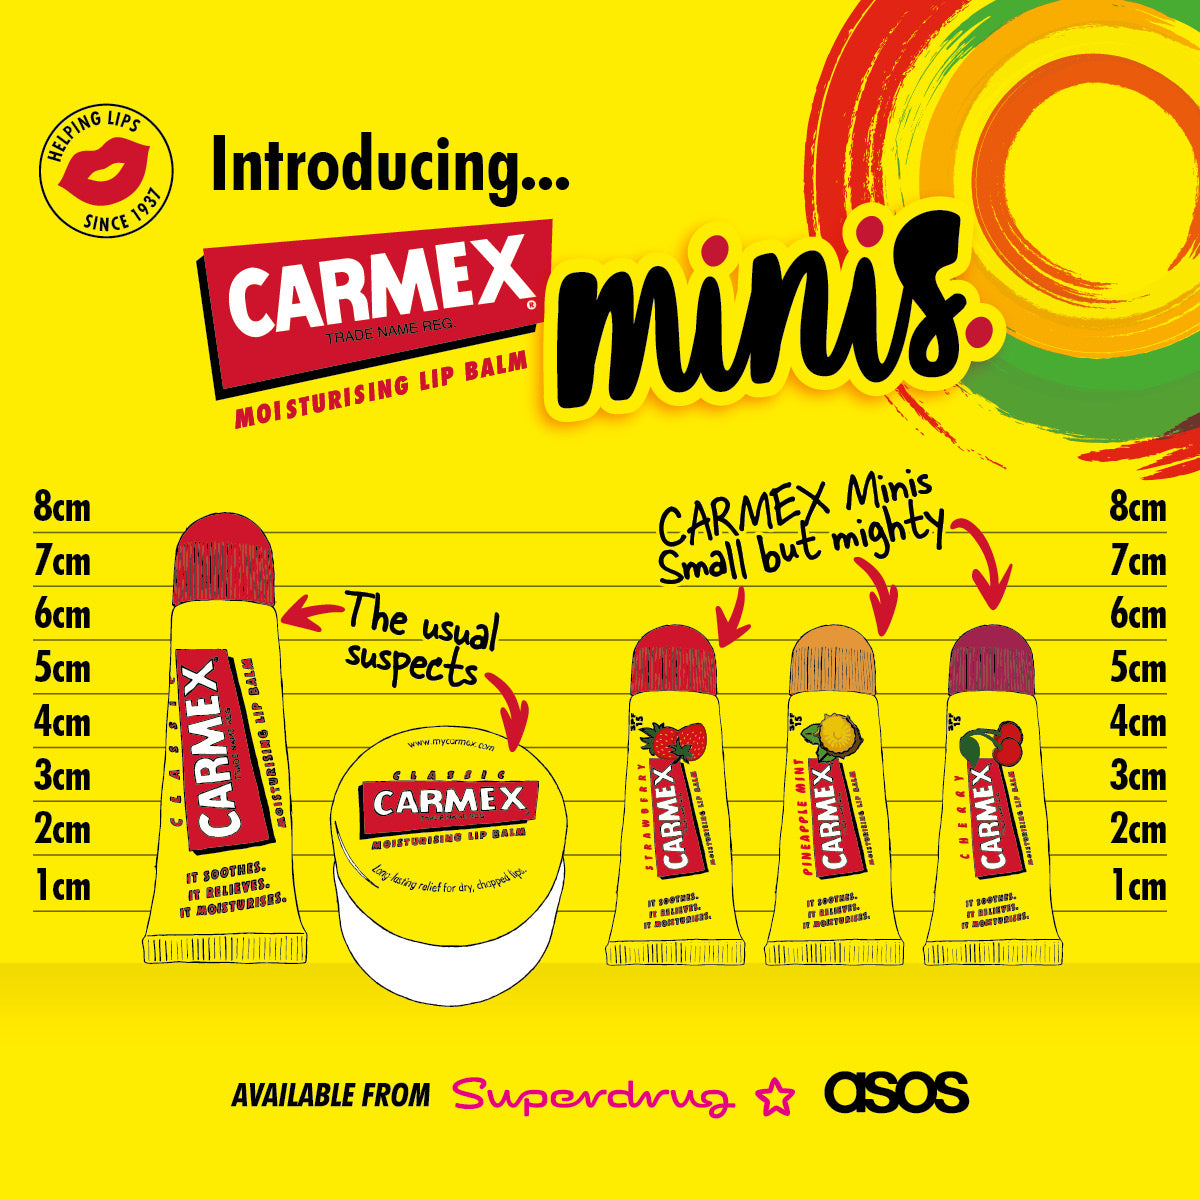 CARMEX Minis